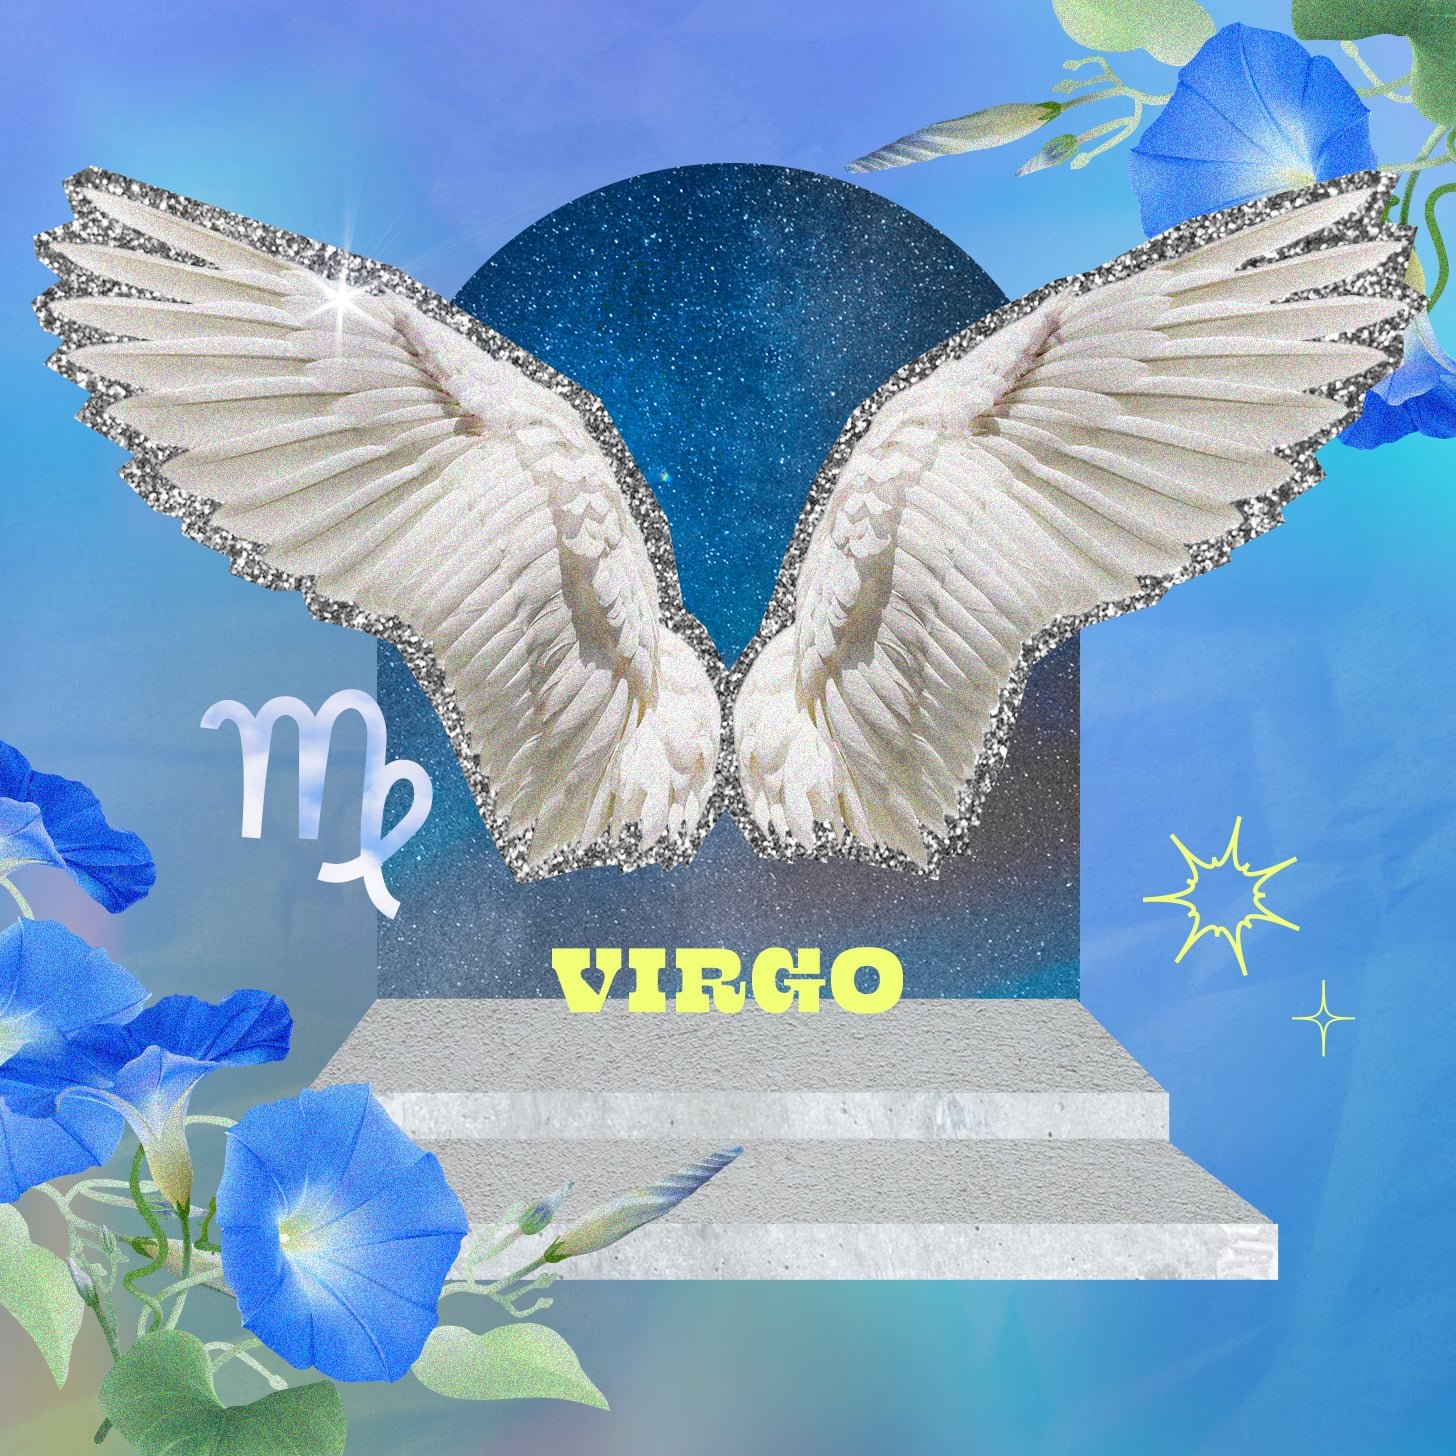 Virgo weekly horoscope for December 11, 2022